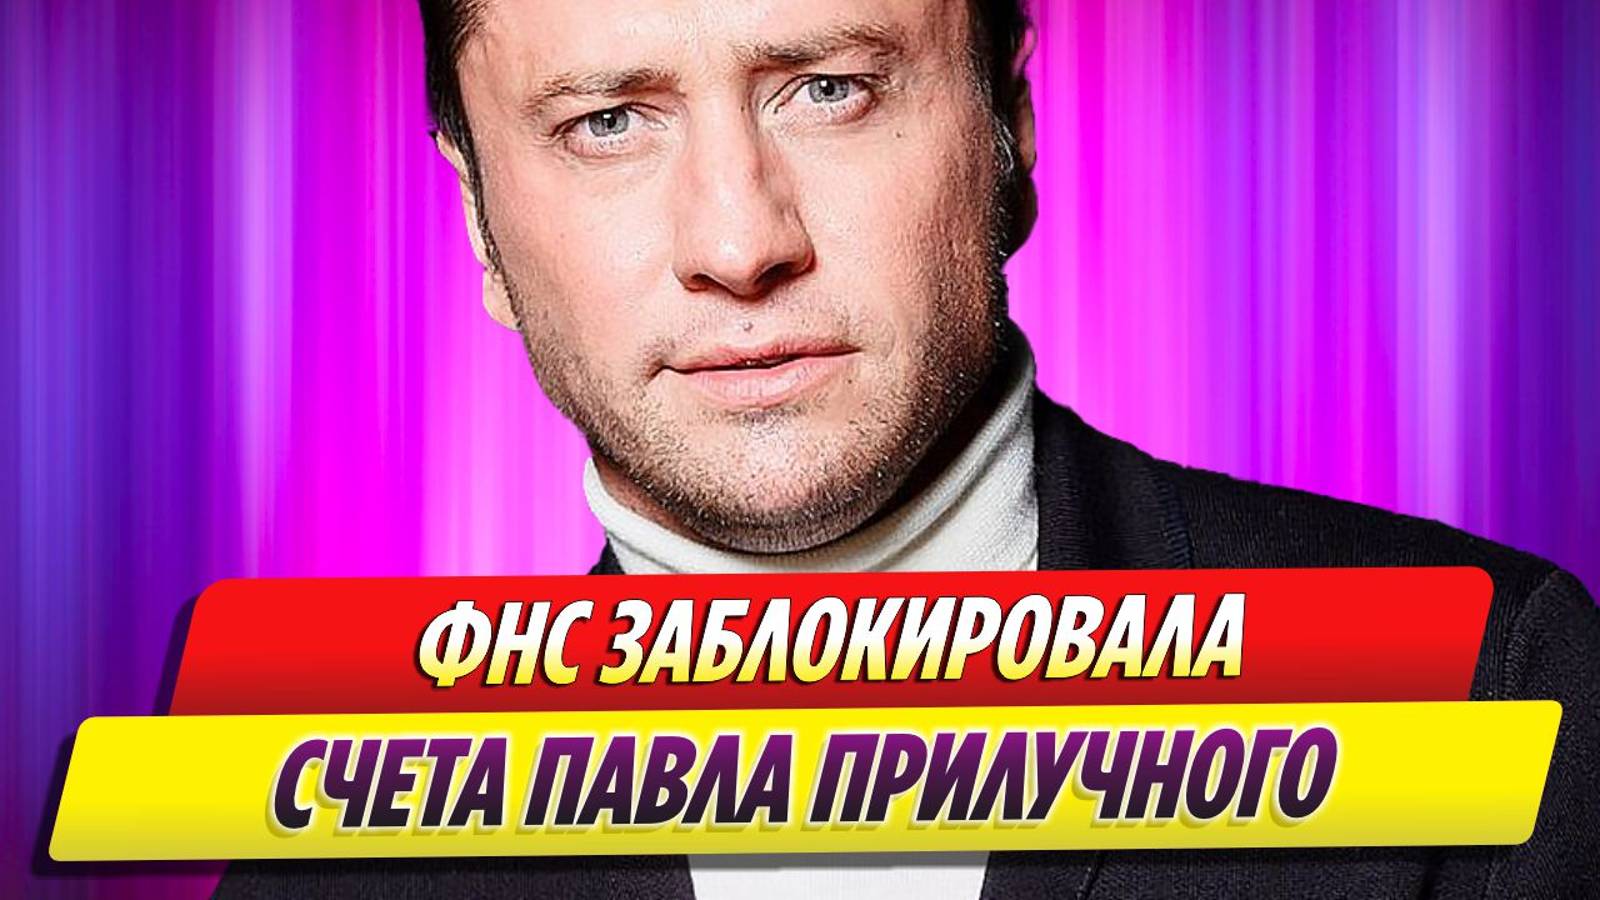 ФНС заблокировала банковские счета Павла Прилучного